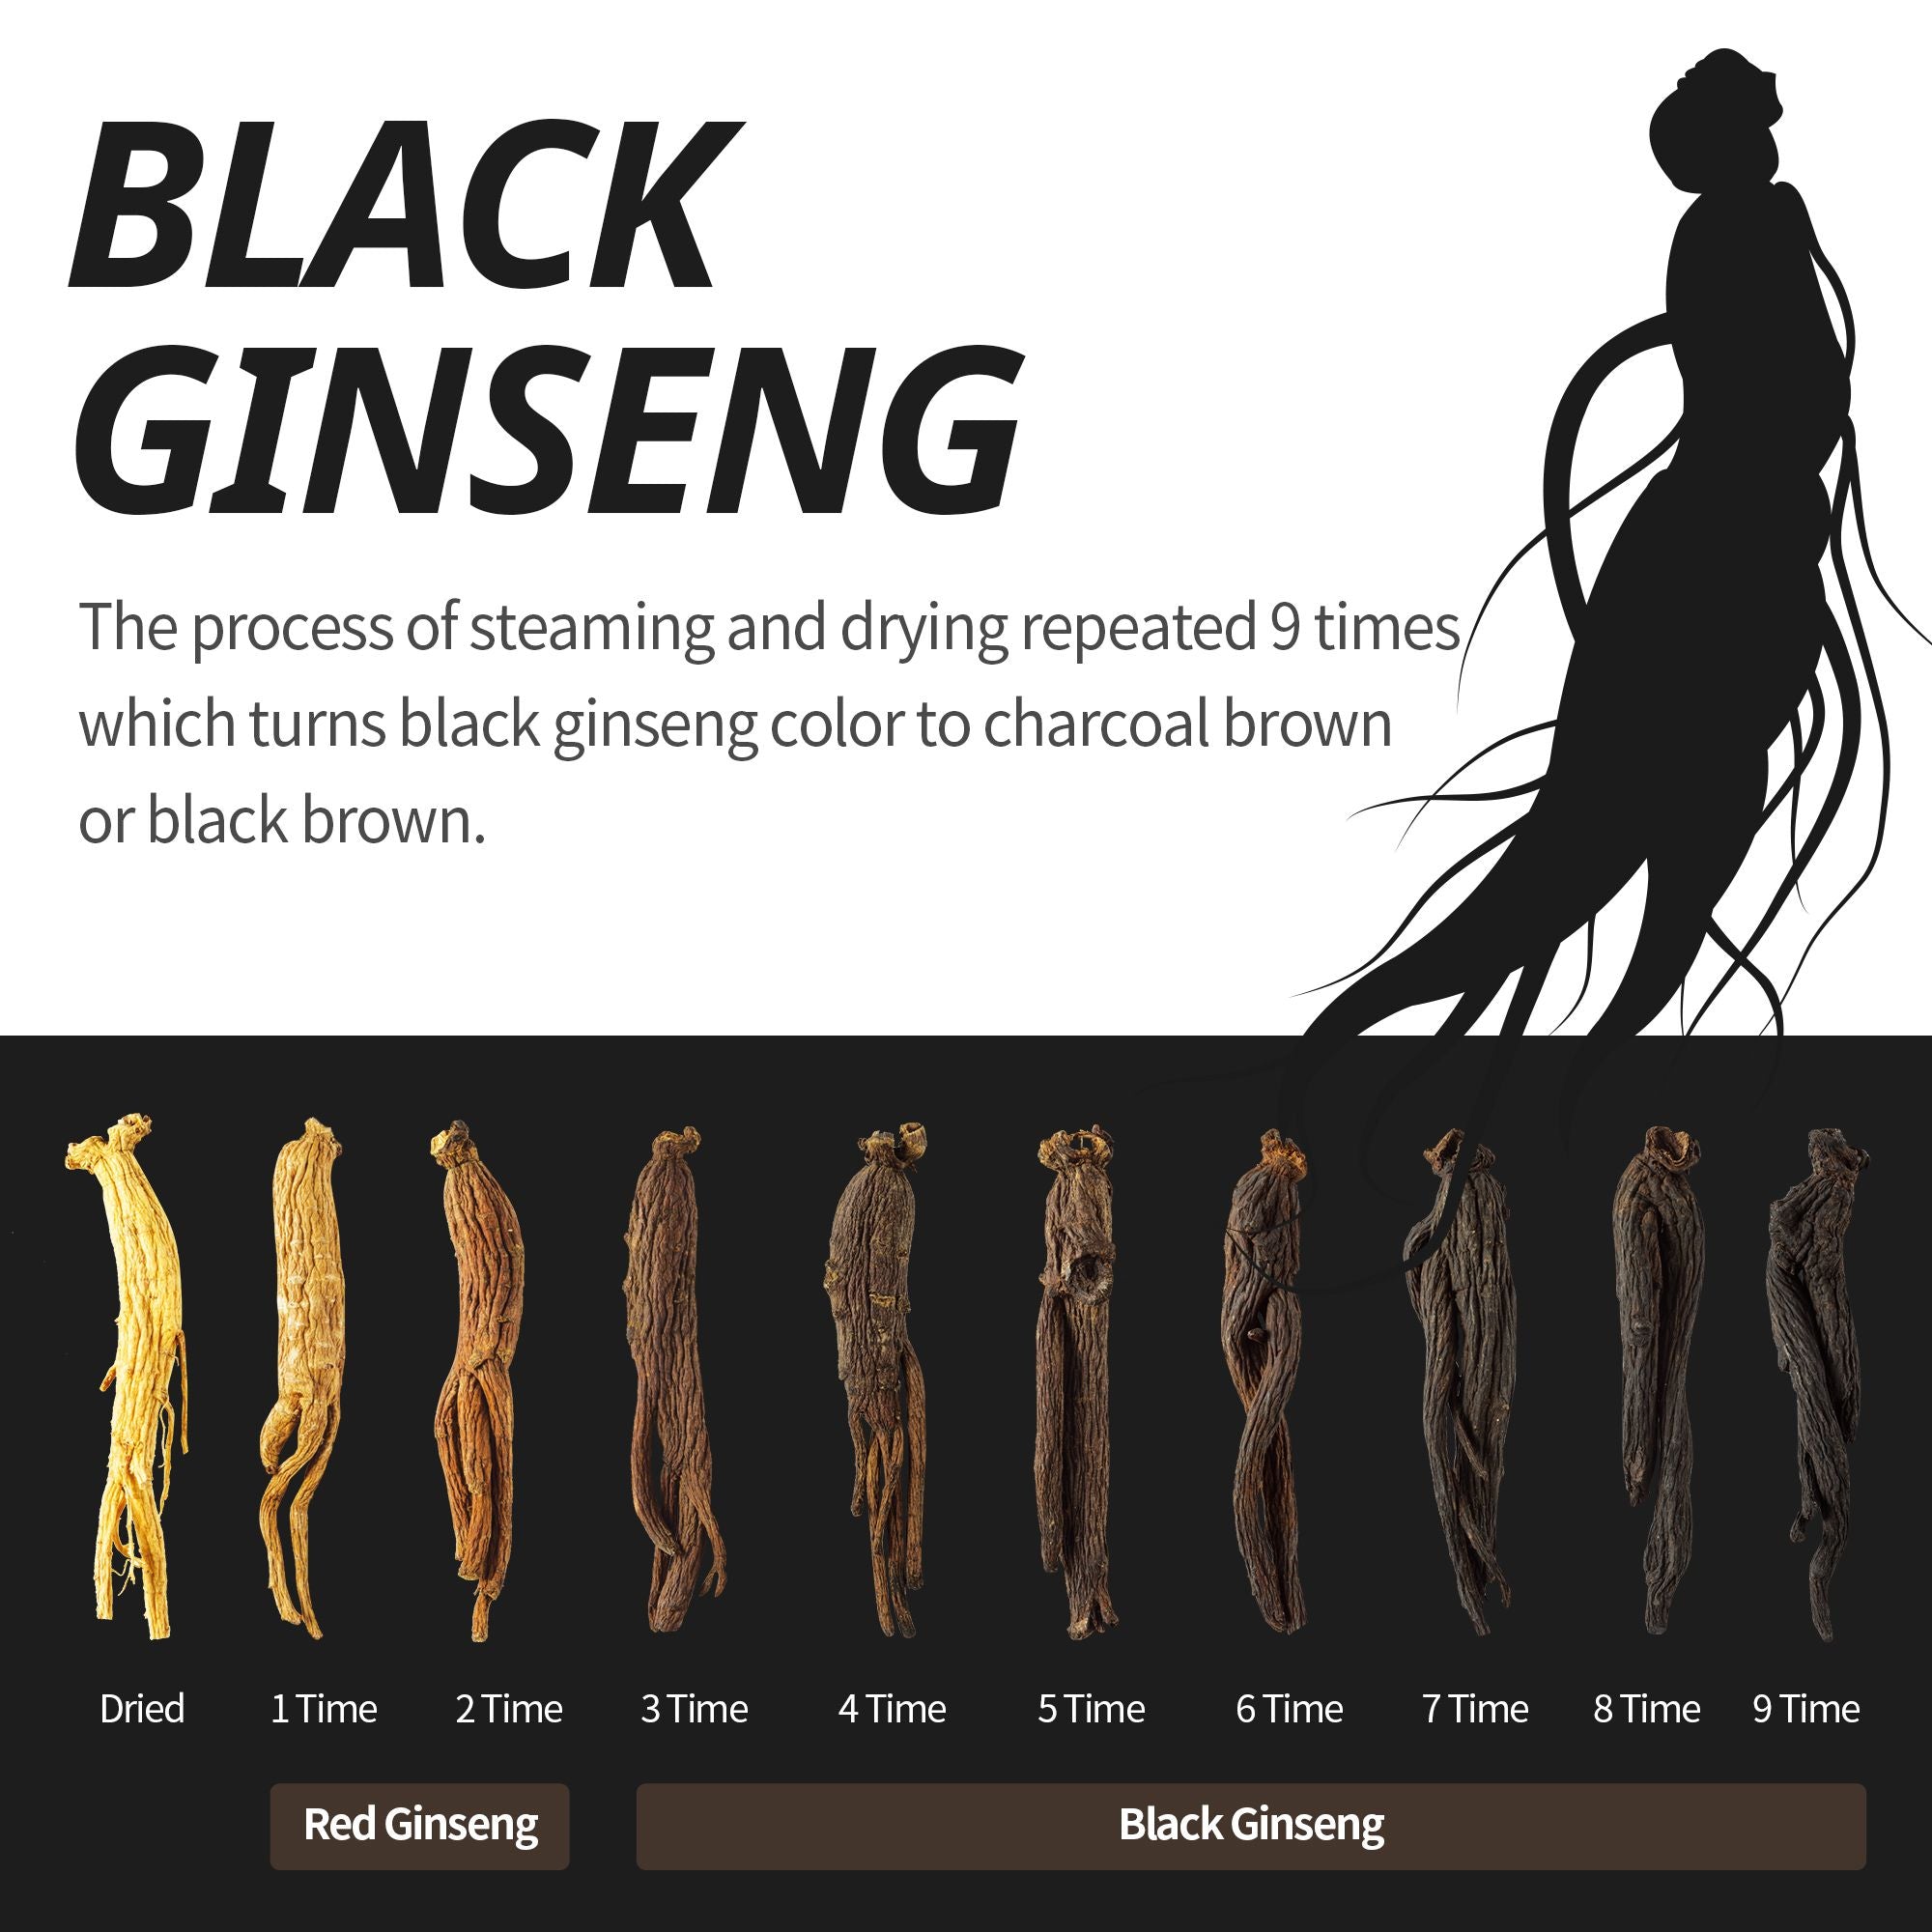 Black Ginseng